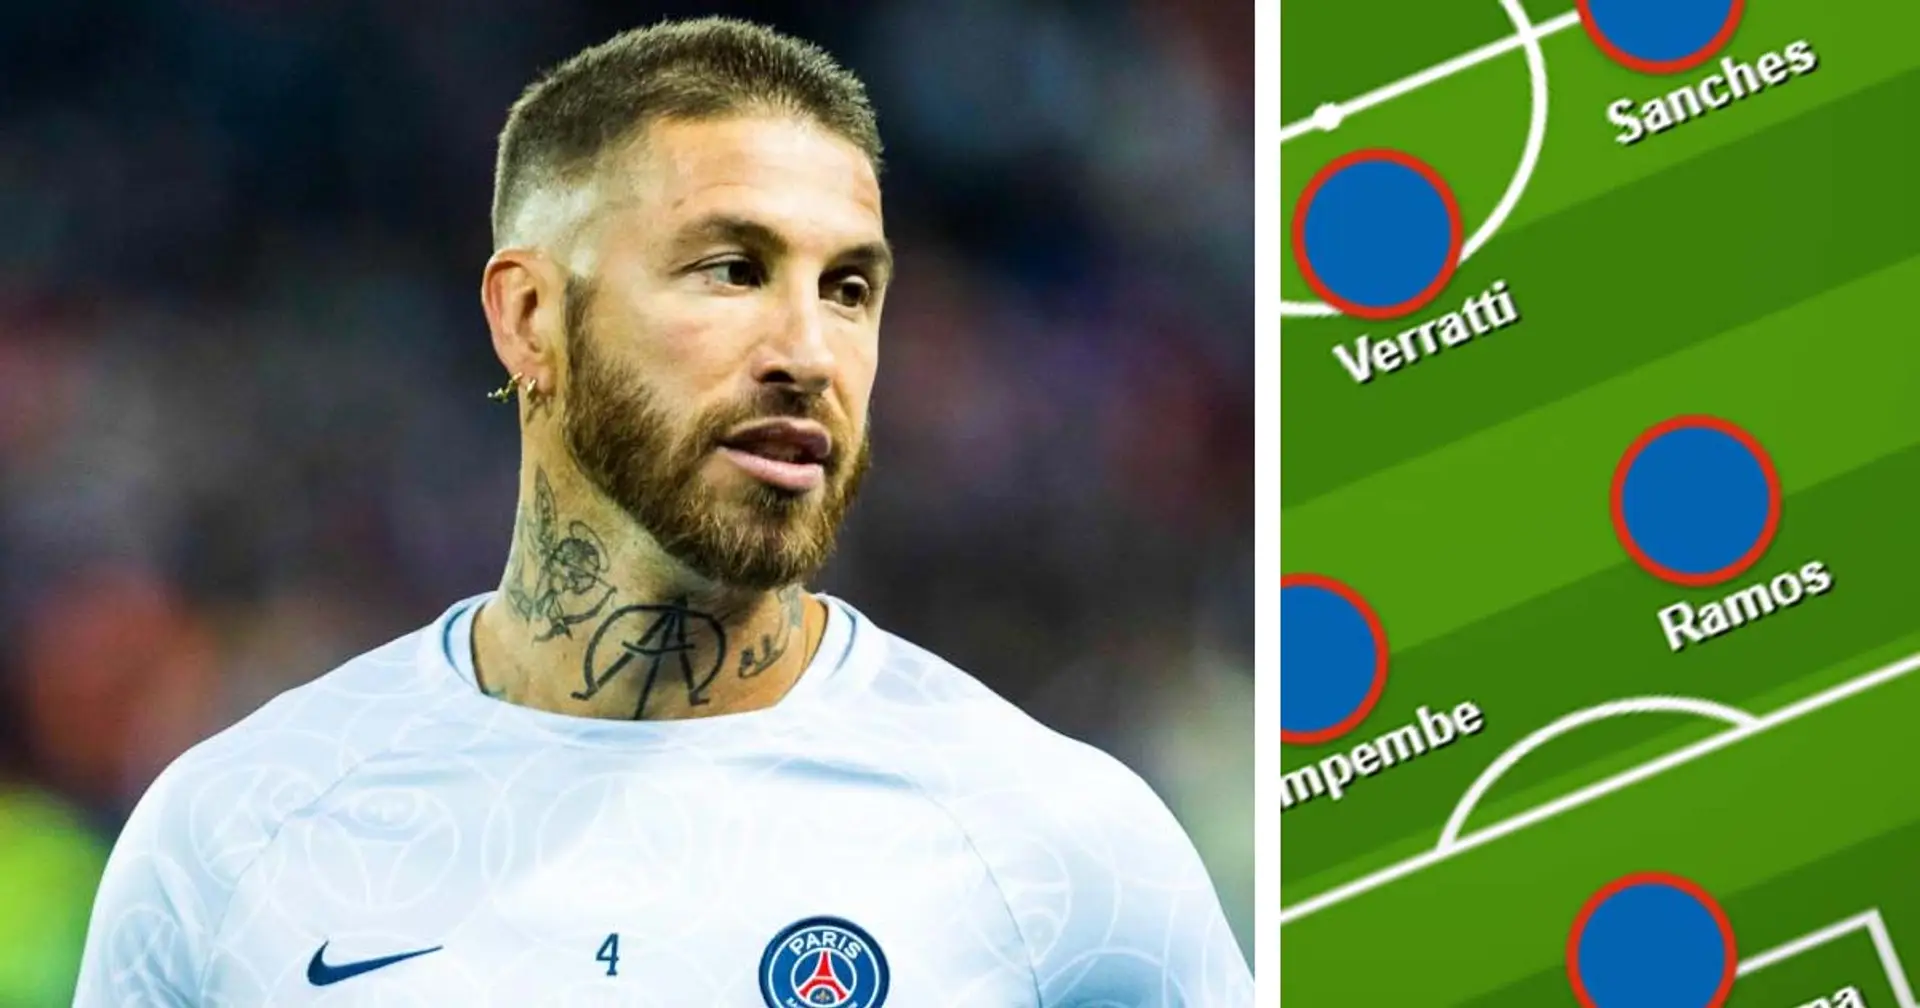 Les fans sollicitent largement la titularisation de "Ramos" pour le match face à Auxerre